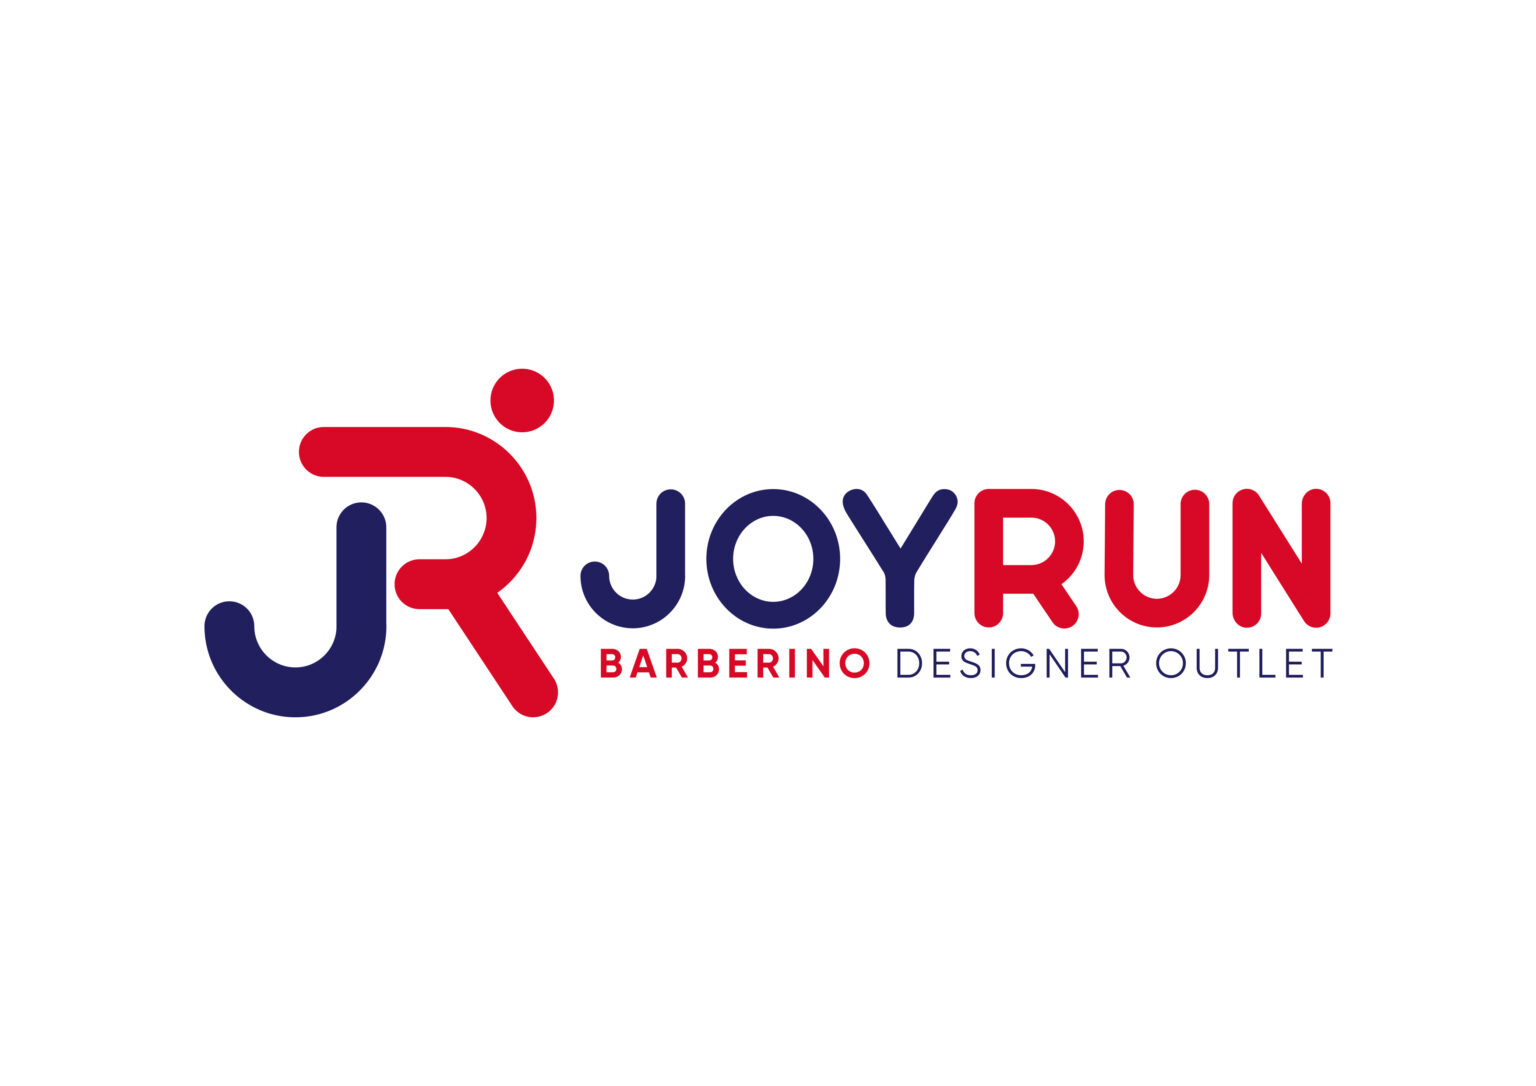 JOY RUN - BARBERINO DESIGNER OUTLET